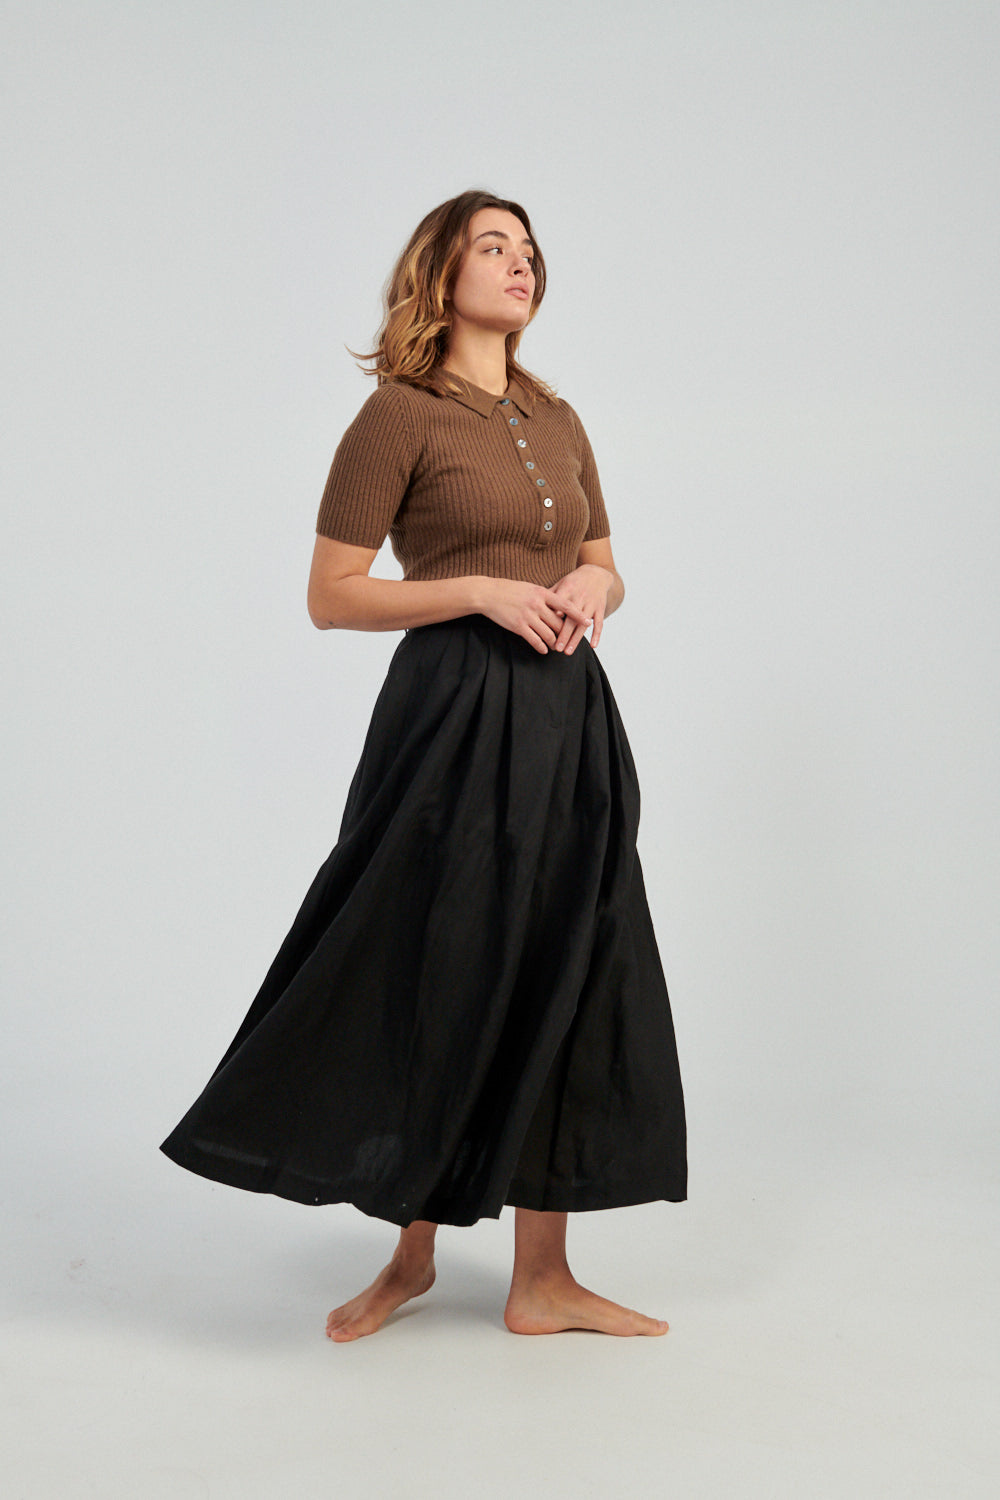 Mara Hoffman Tulay Skirt black-Mara Hoffman long black skirt-Idun-St. Paul